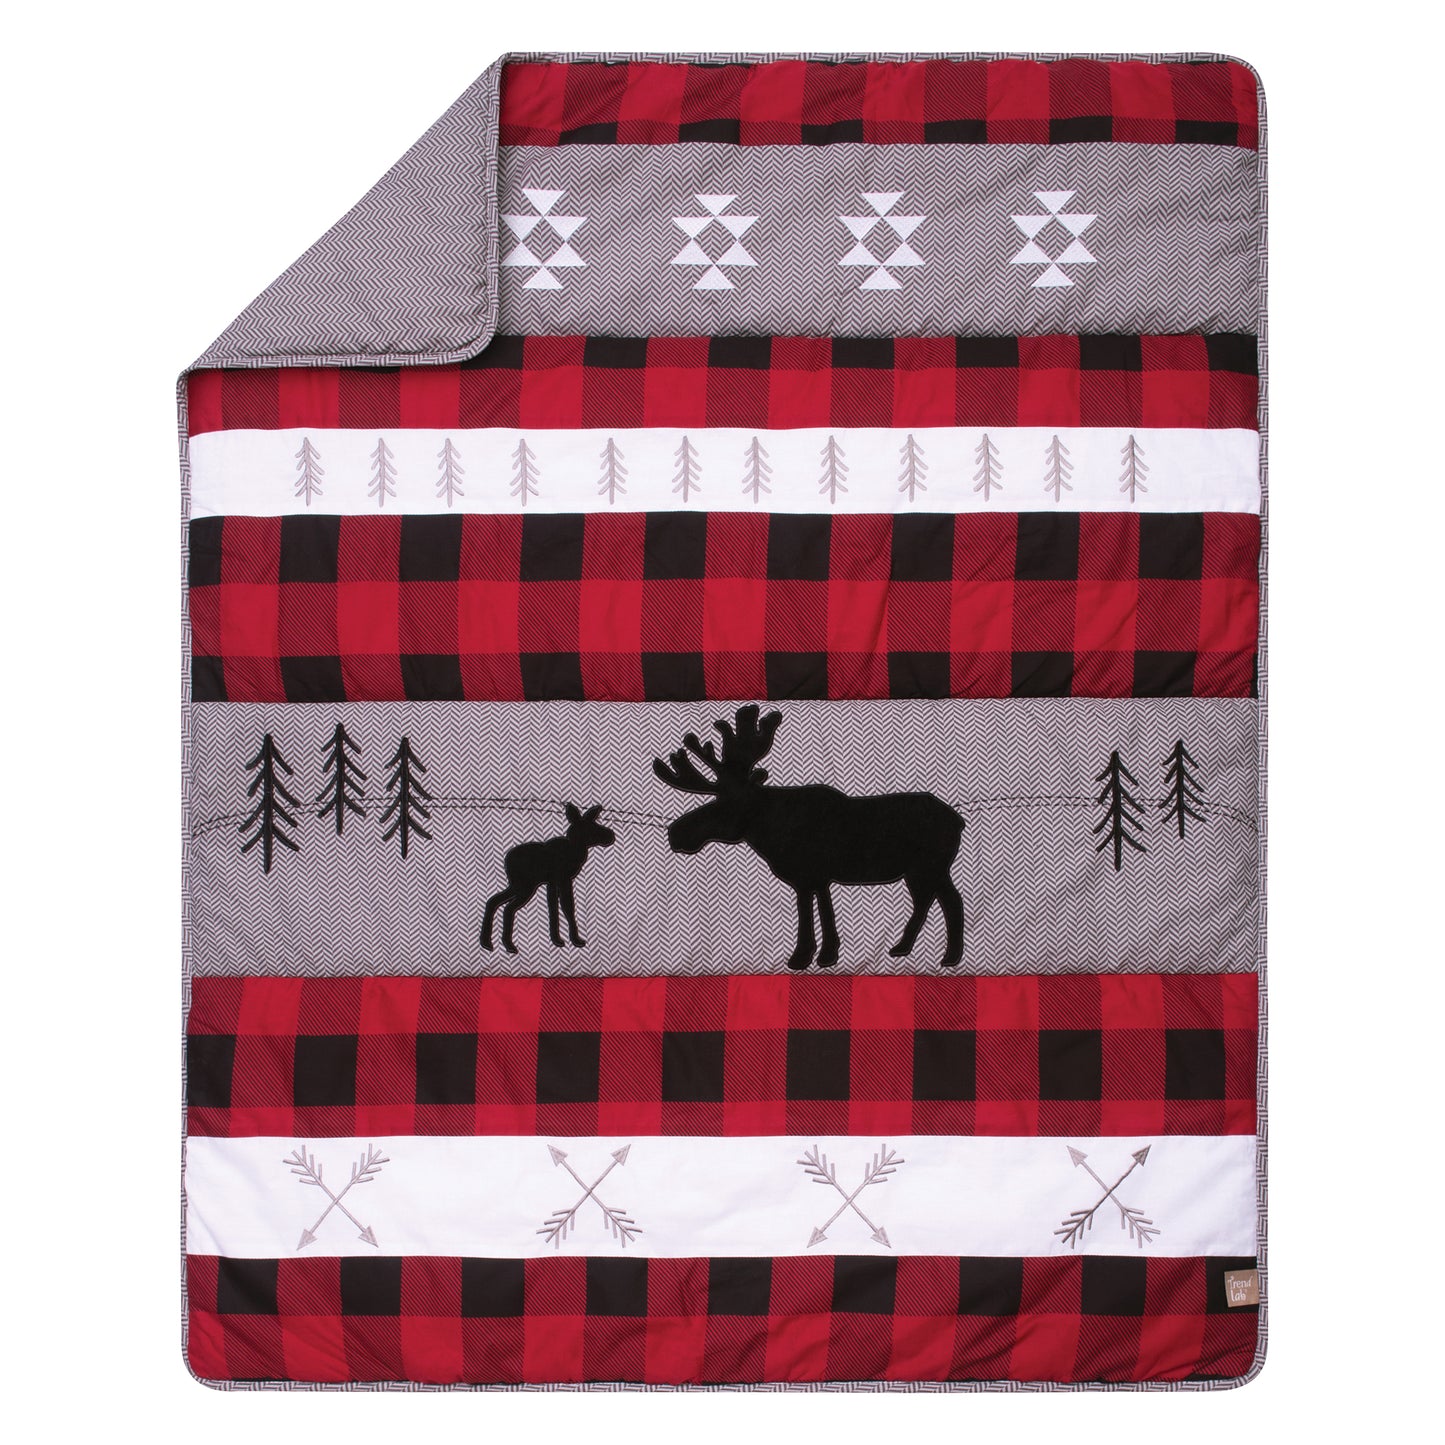 Lumberjack Moose 3 Piece Crib Bedding Set